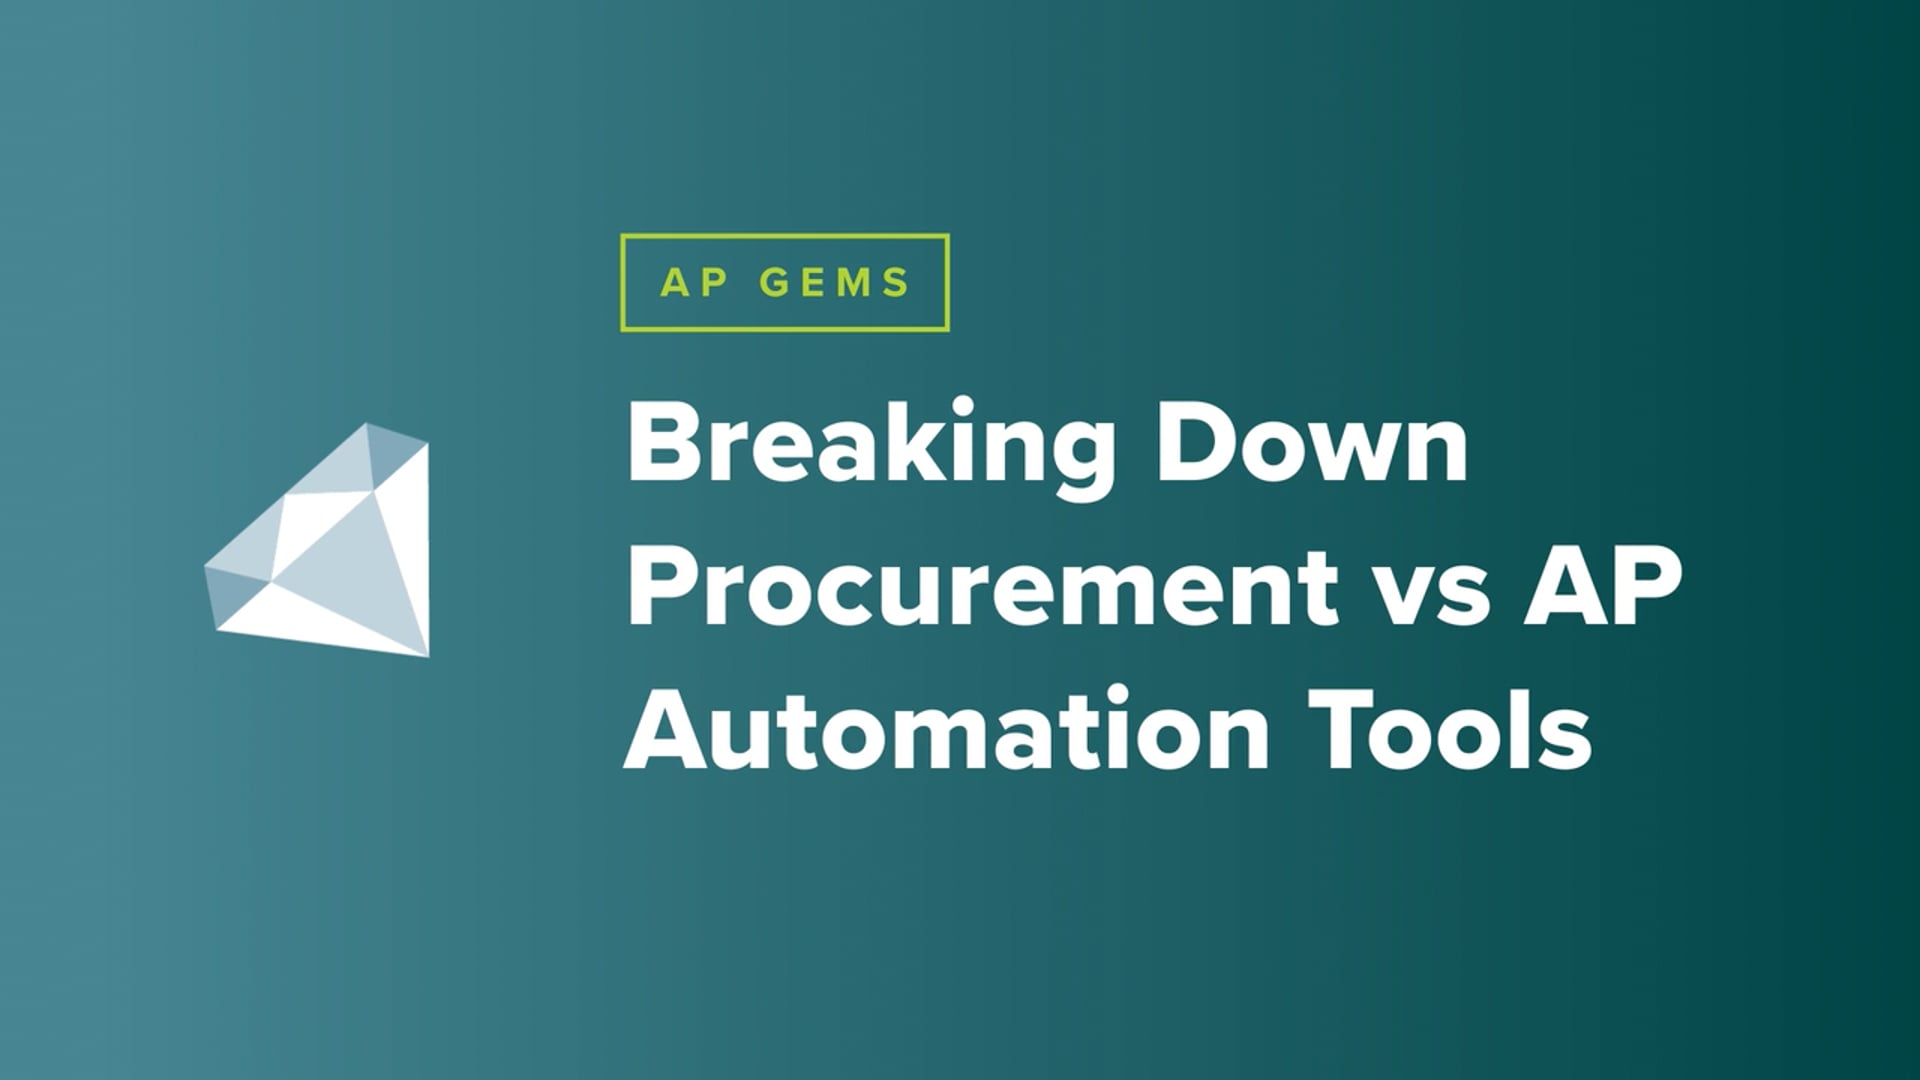 AP Gems: Breaking Down Procurement vs. AP Automation Tools